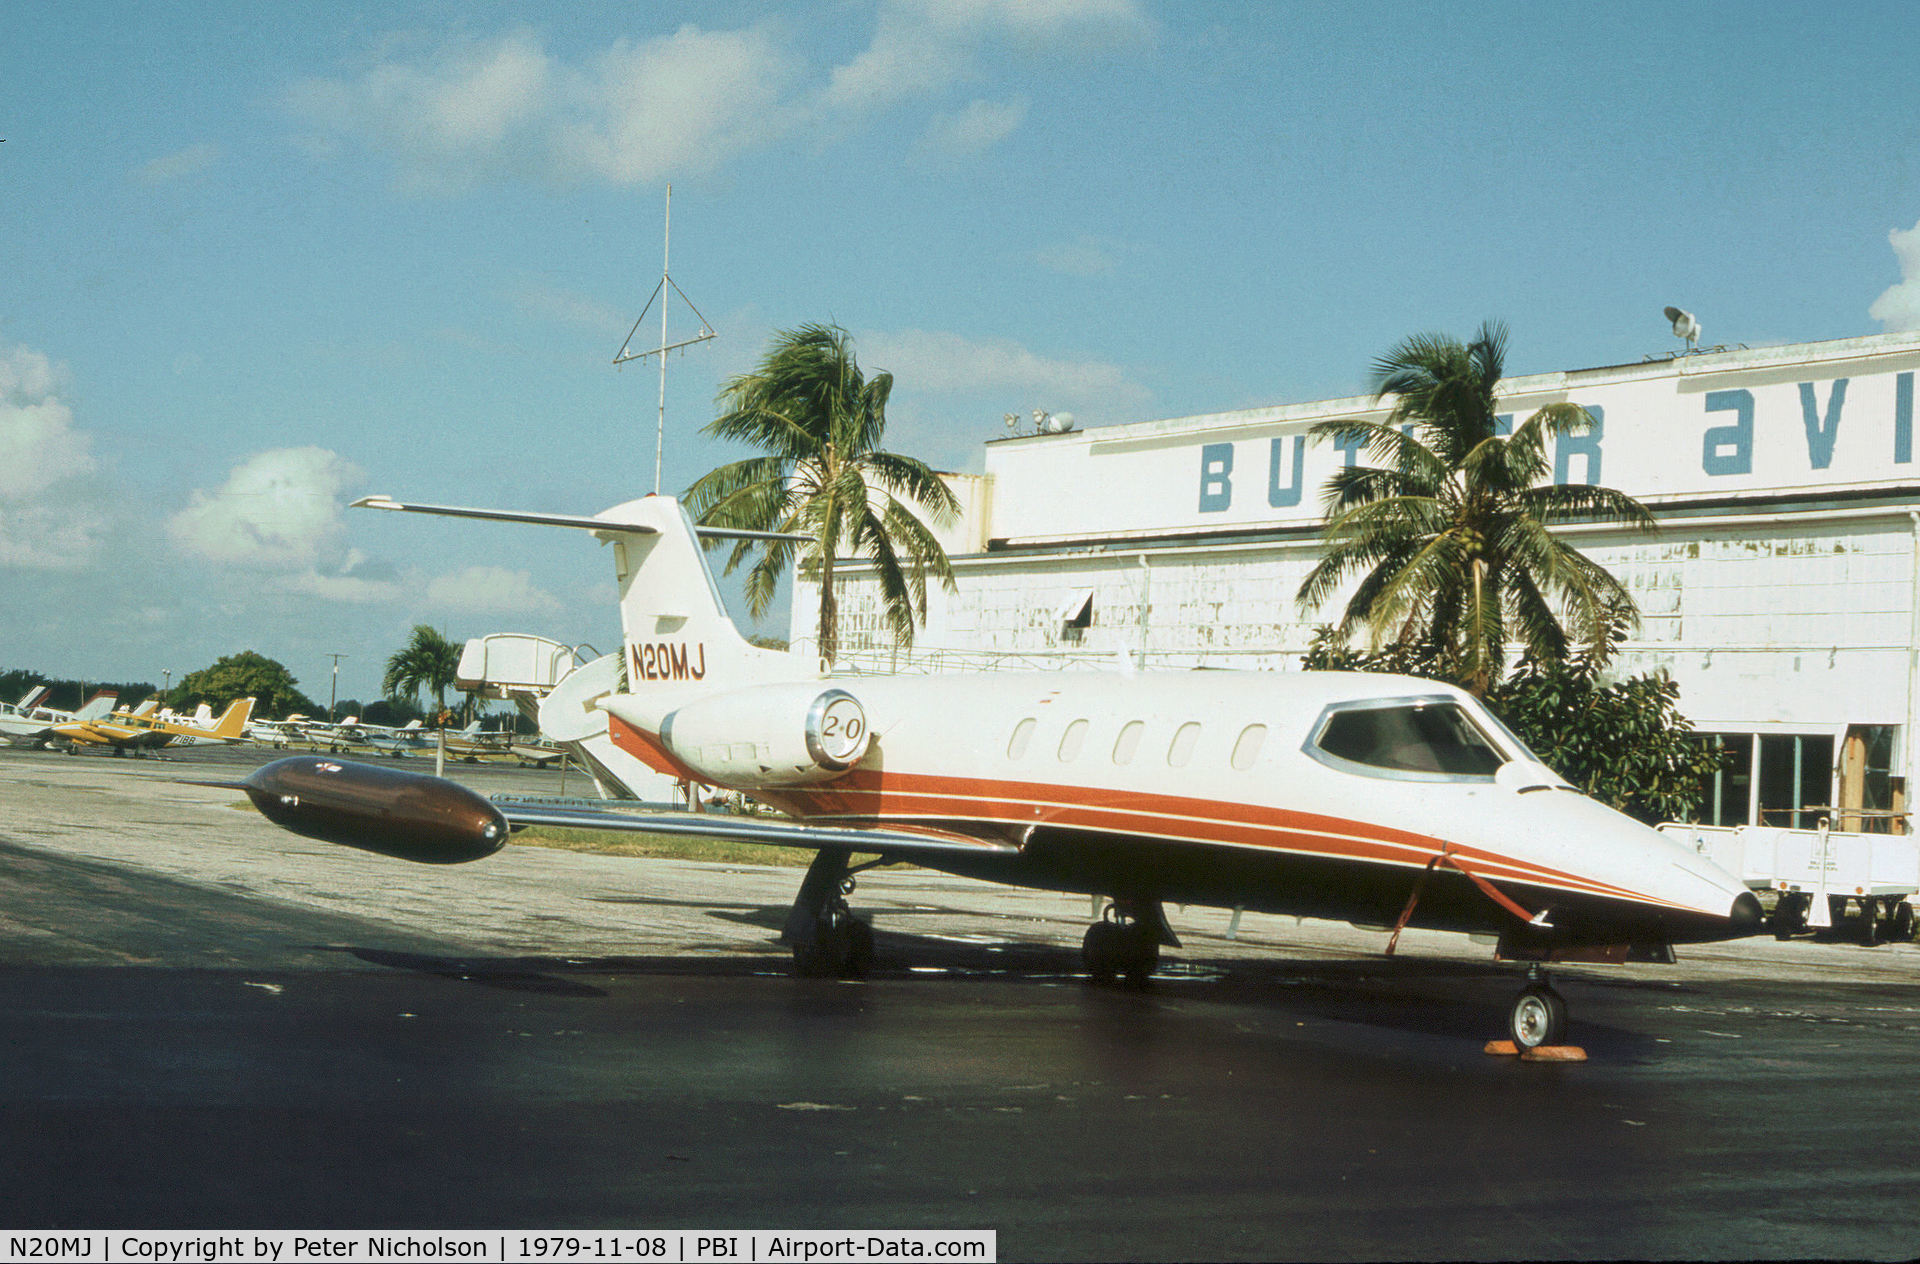 N20MJ, 1979 Gates Learjet 25D C/N 277, Learjet 25D as seen at West Palm Beach in November 1979.